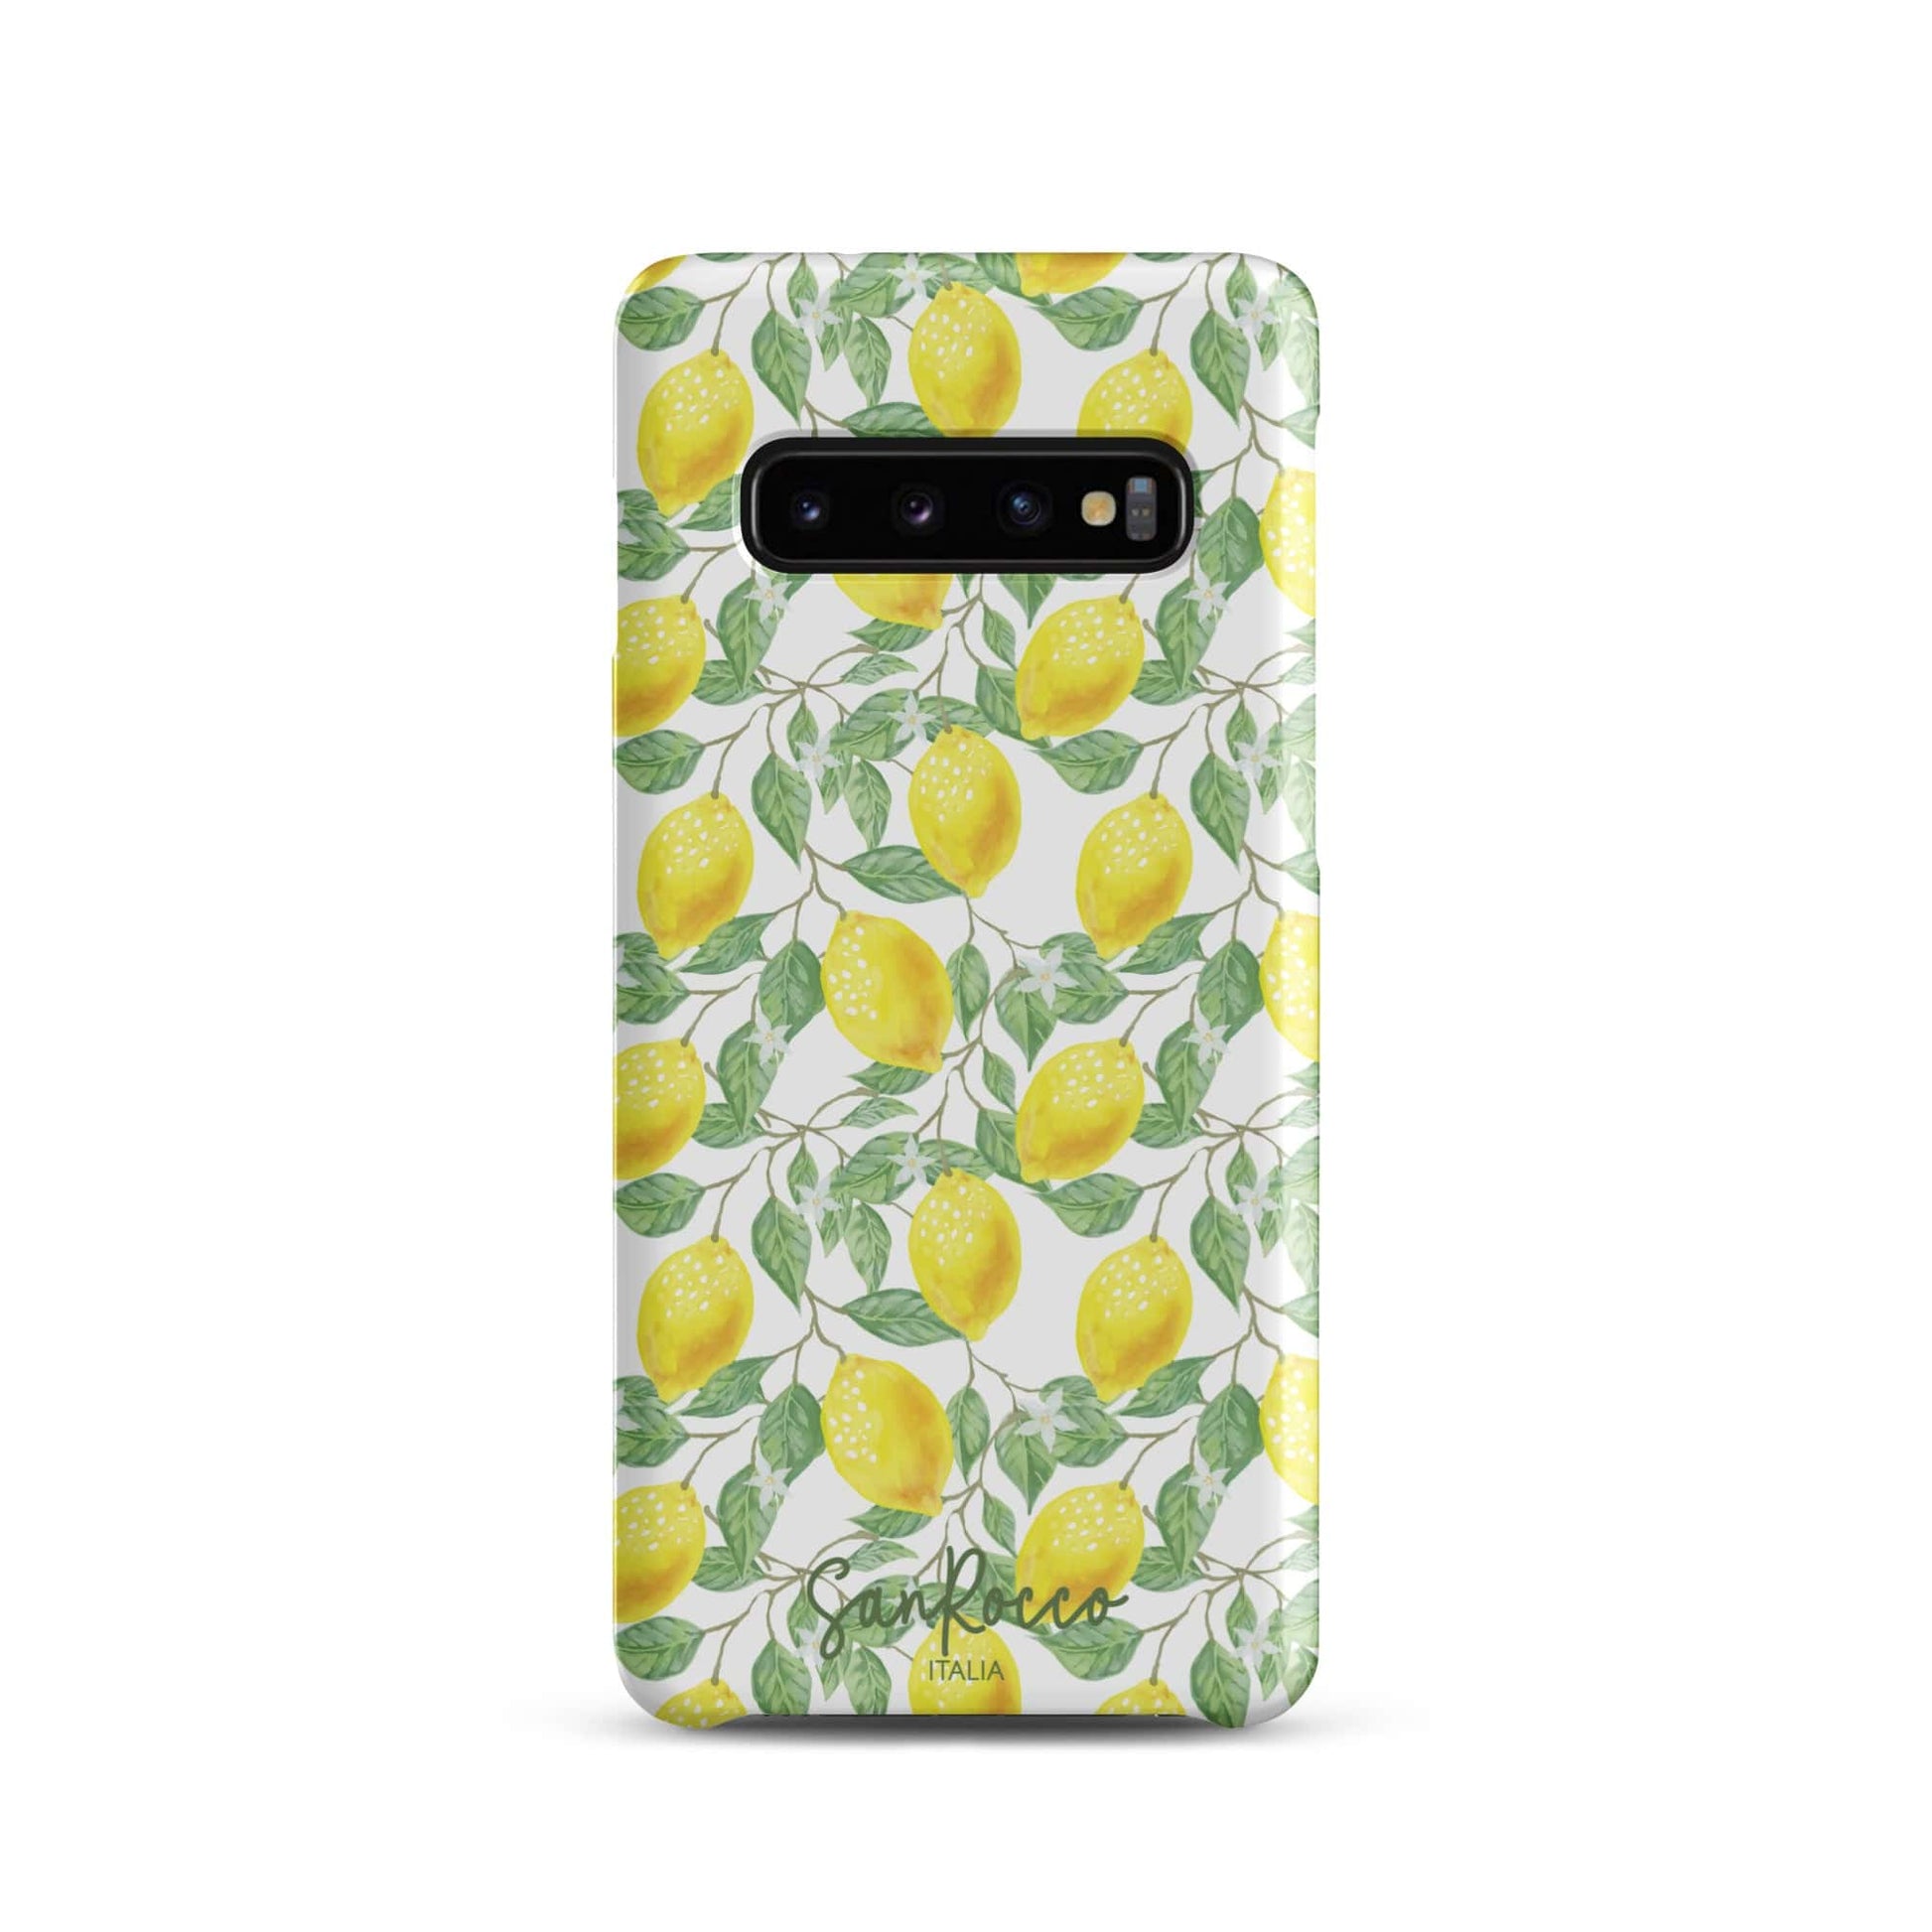 Limoncello Luxe Snap Case for Samsung® - Samsung Phone Cases - San Rocco Italia